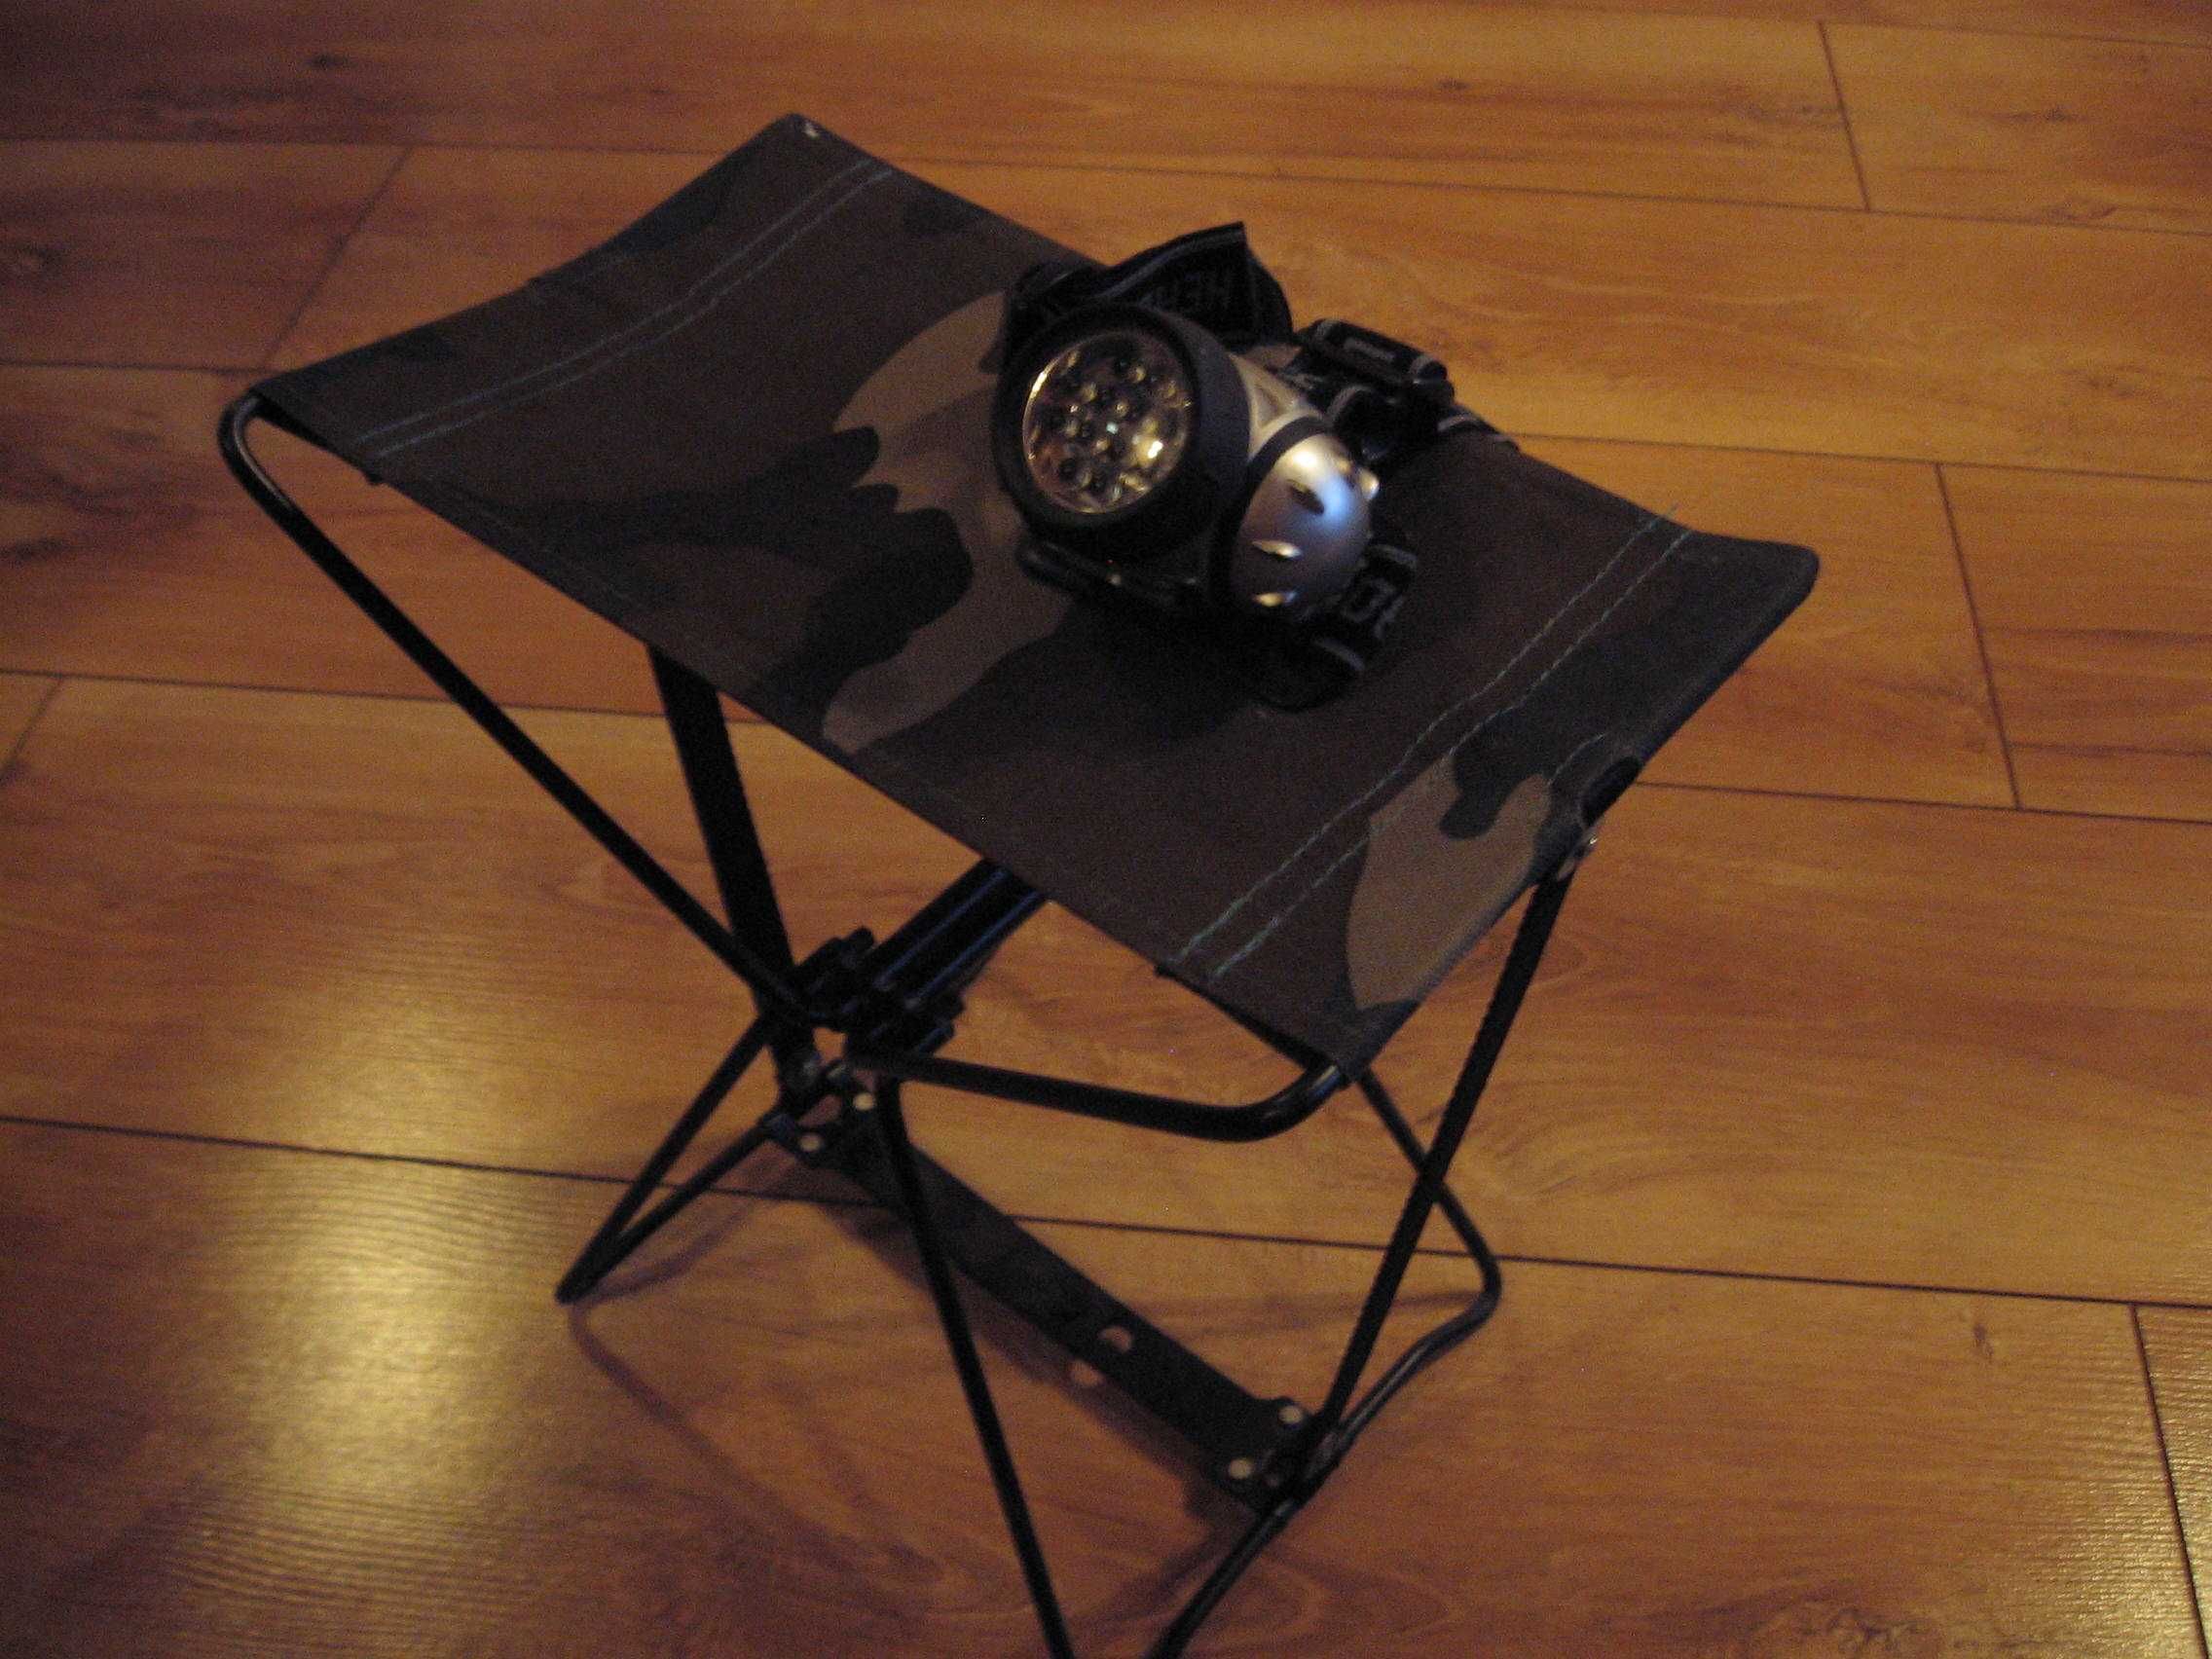 krzesełko składane oraz latarka czołowa